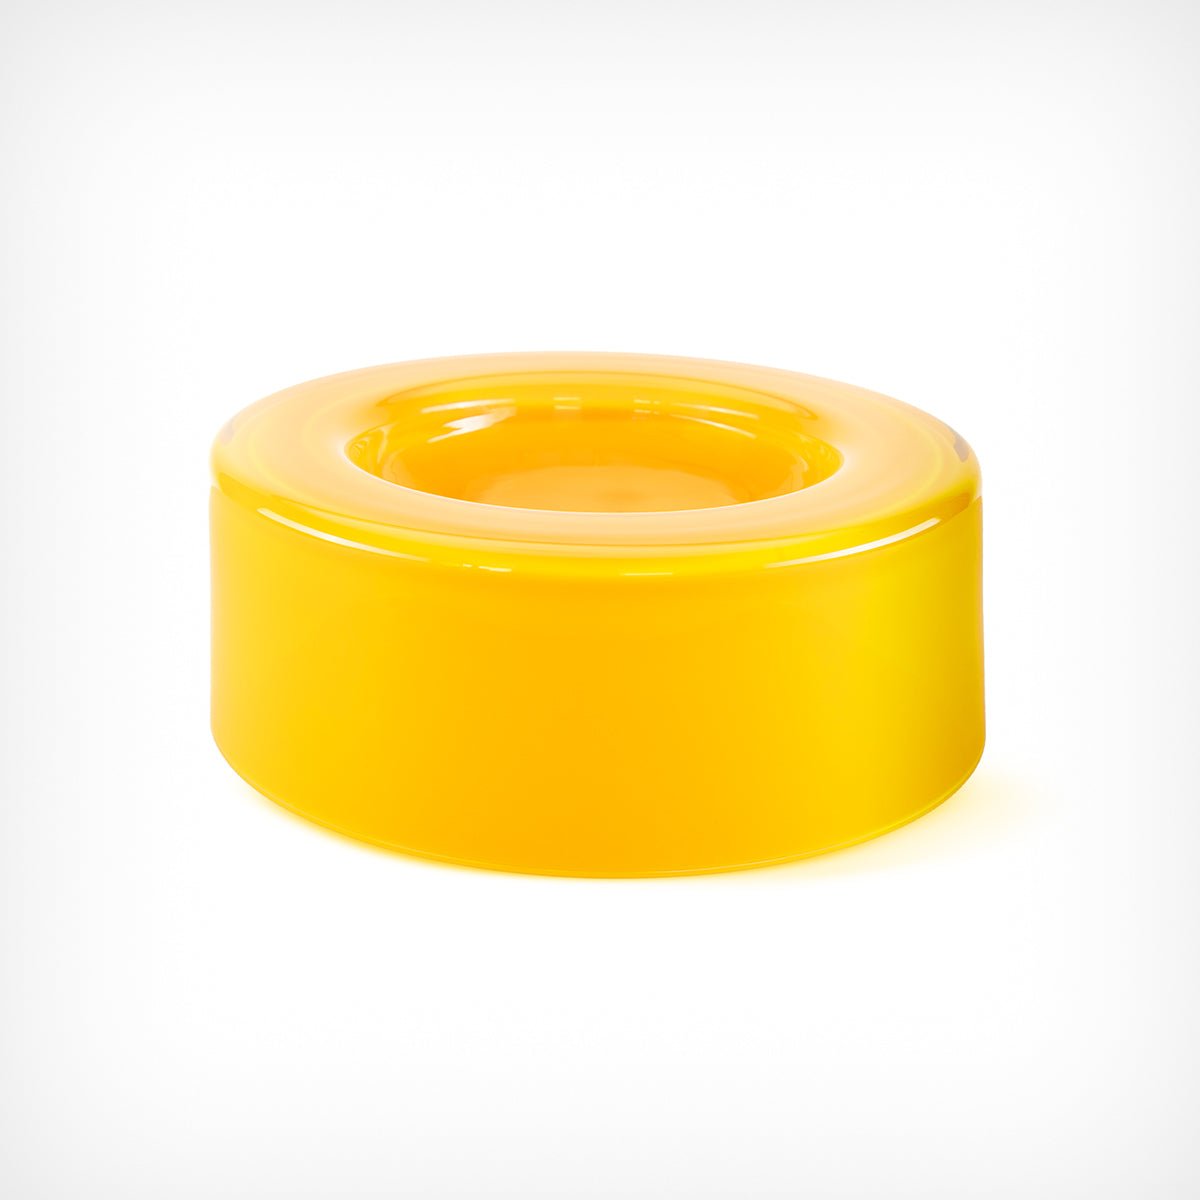 Schale „WET Bowl” Yellow mittelgroß Ursula Futura – diesellerie.com